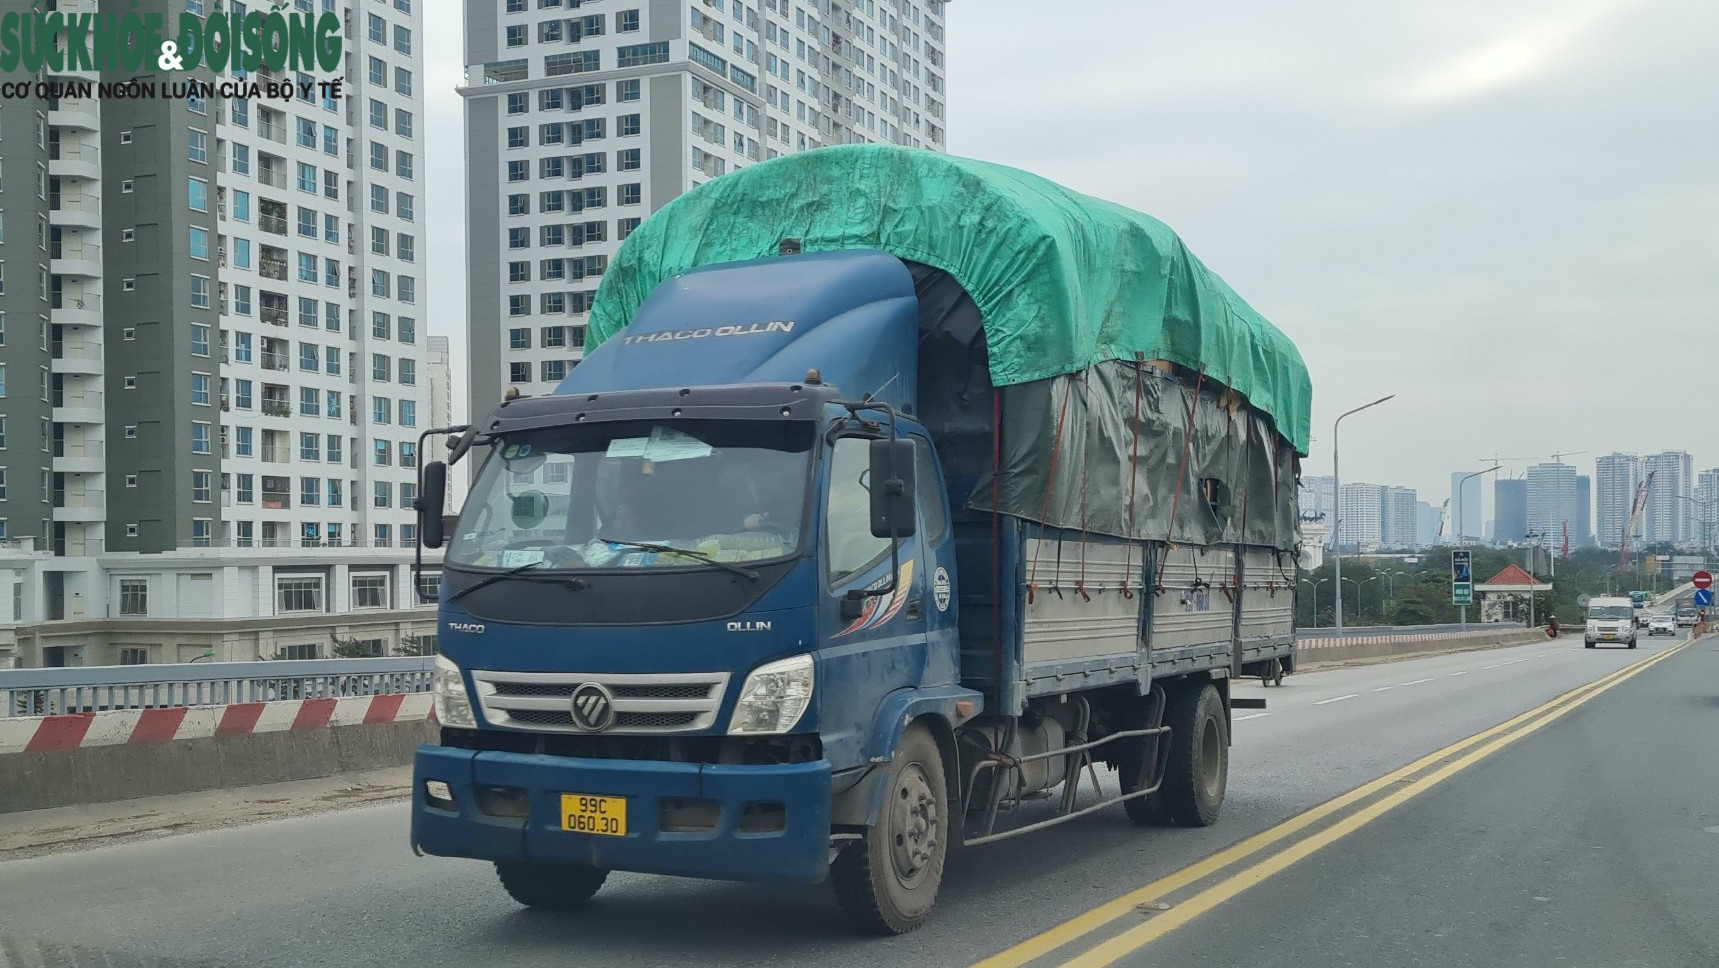 Ám ảnh xe cơi thùng, có ngọn “thả cửa” hoạt động trên cầu Thăng Long - Ảnh 2.